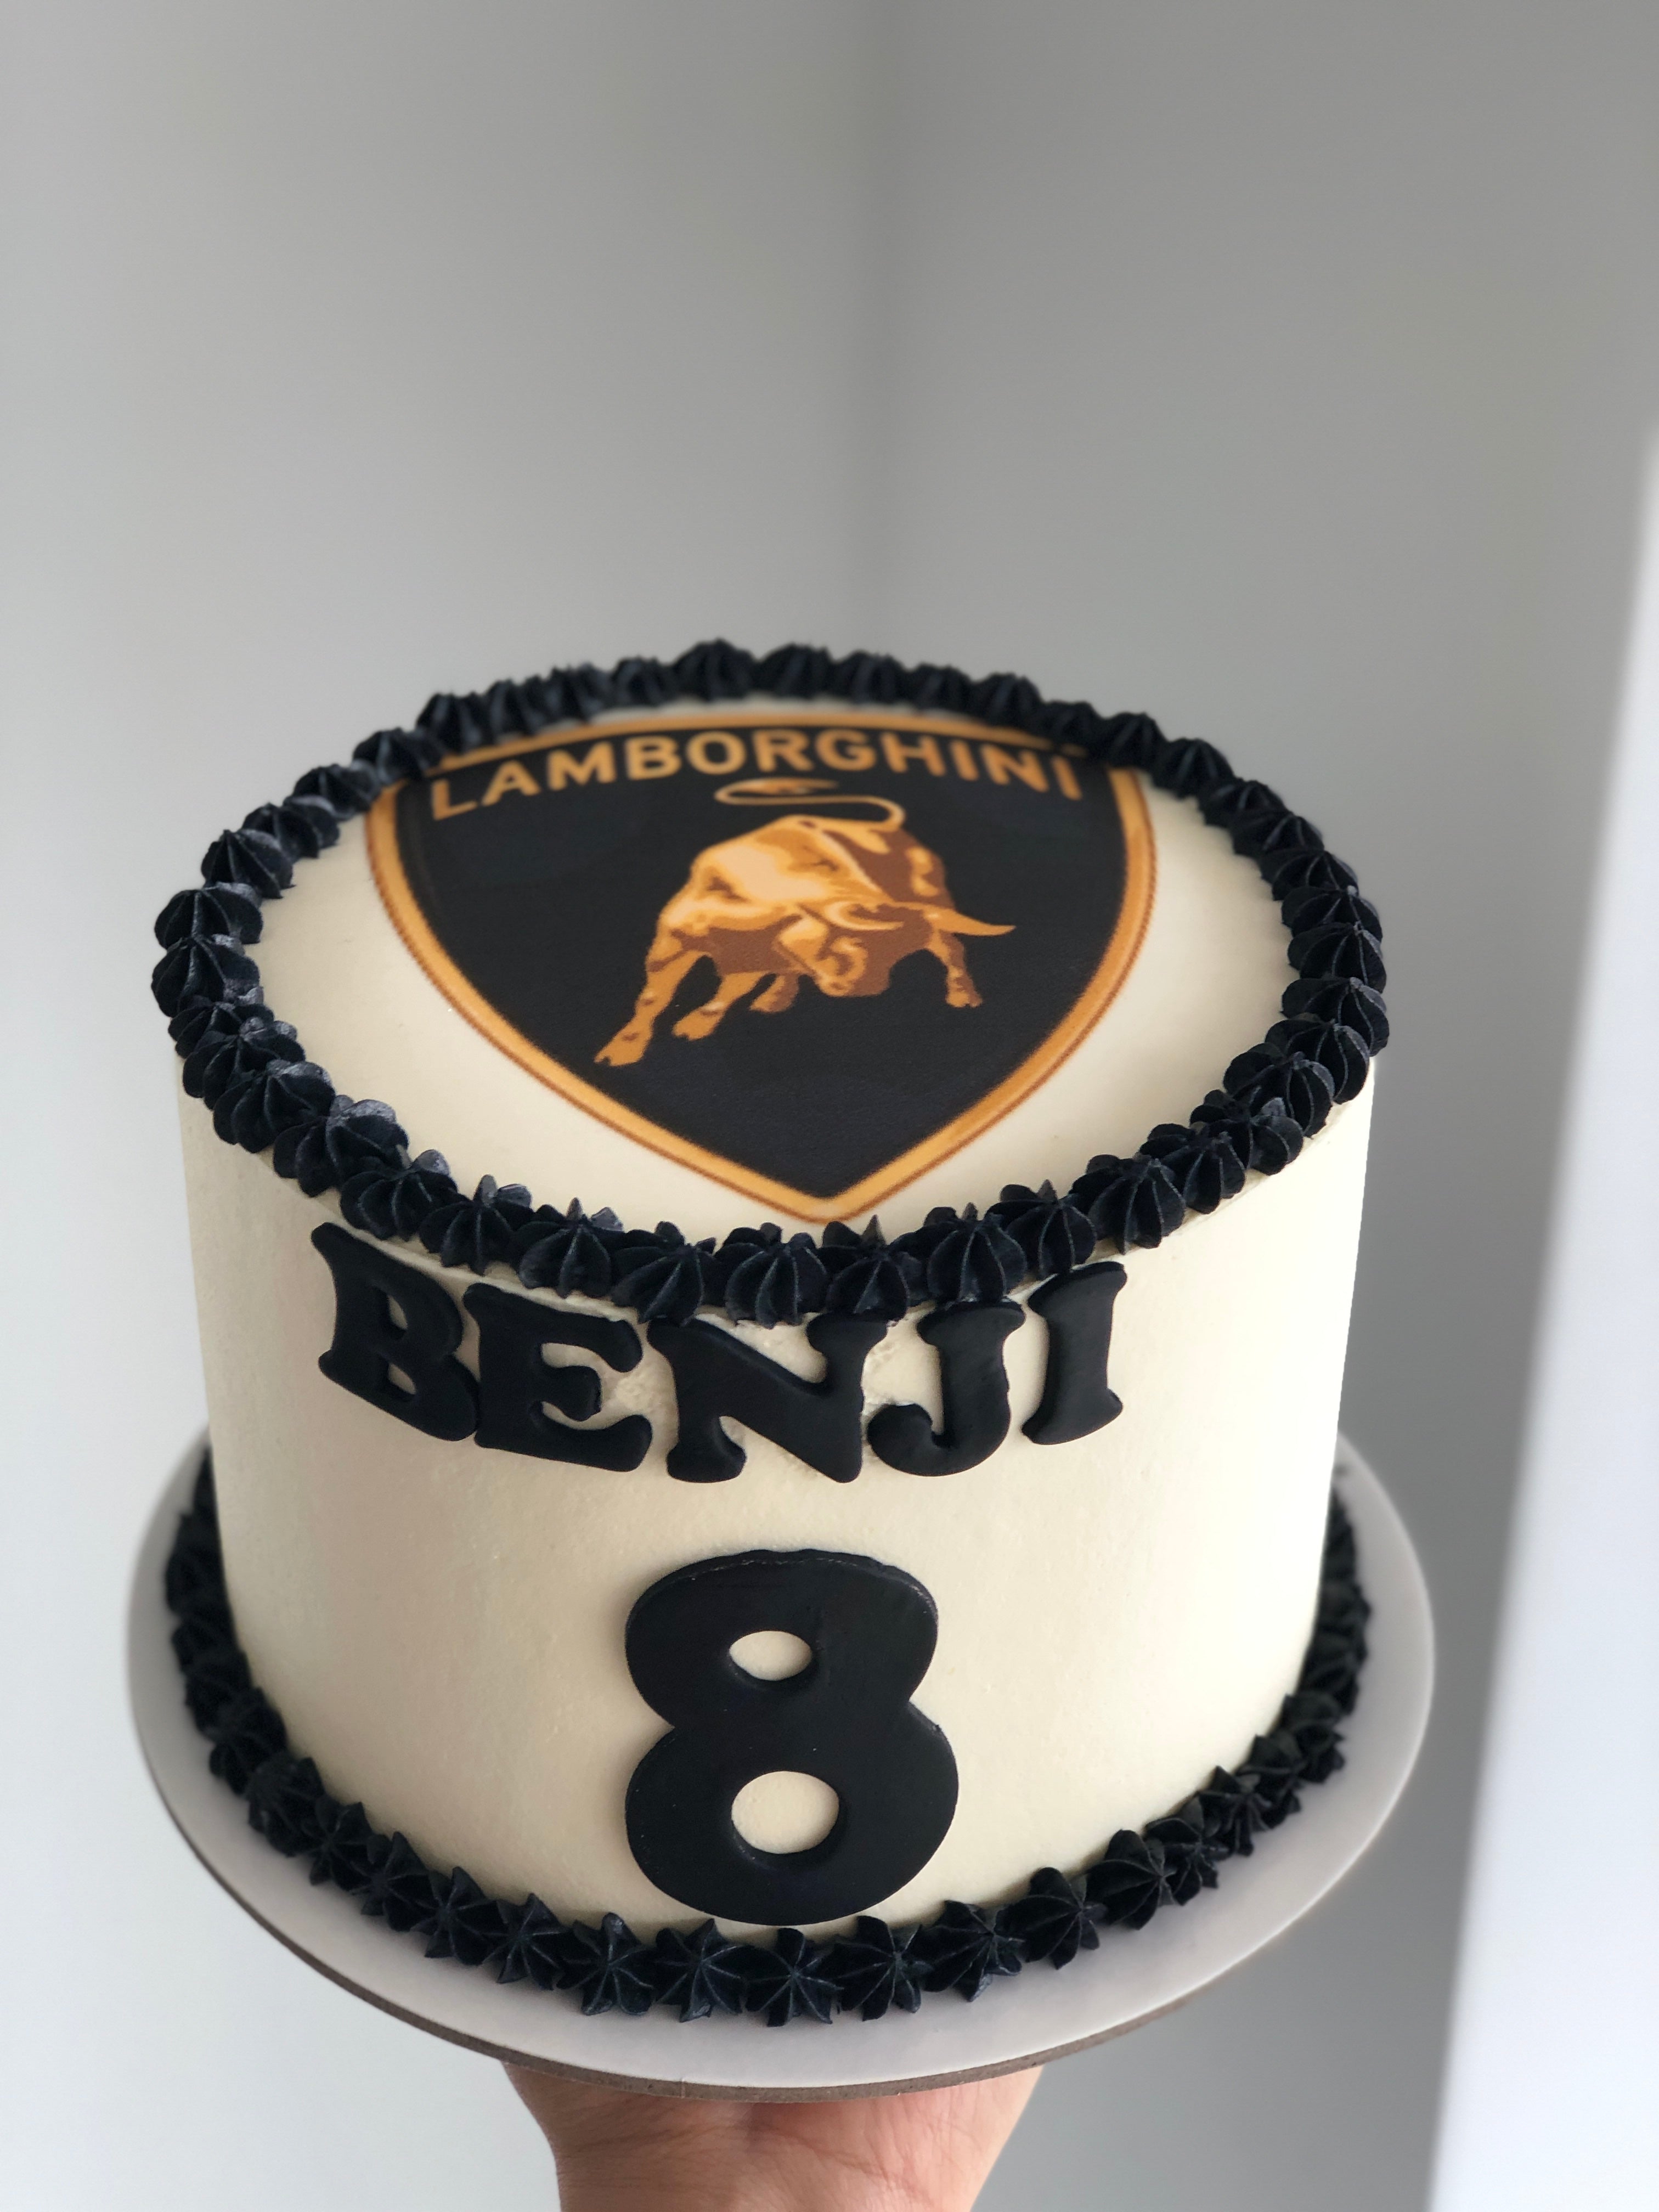 Lamborghini cake #lamborghini #ediblegold #lambo #cakedecorating #cake... |  TikTok